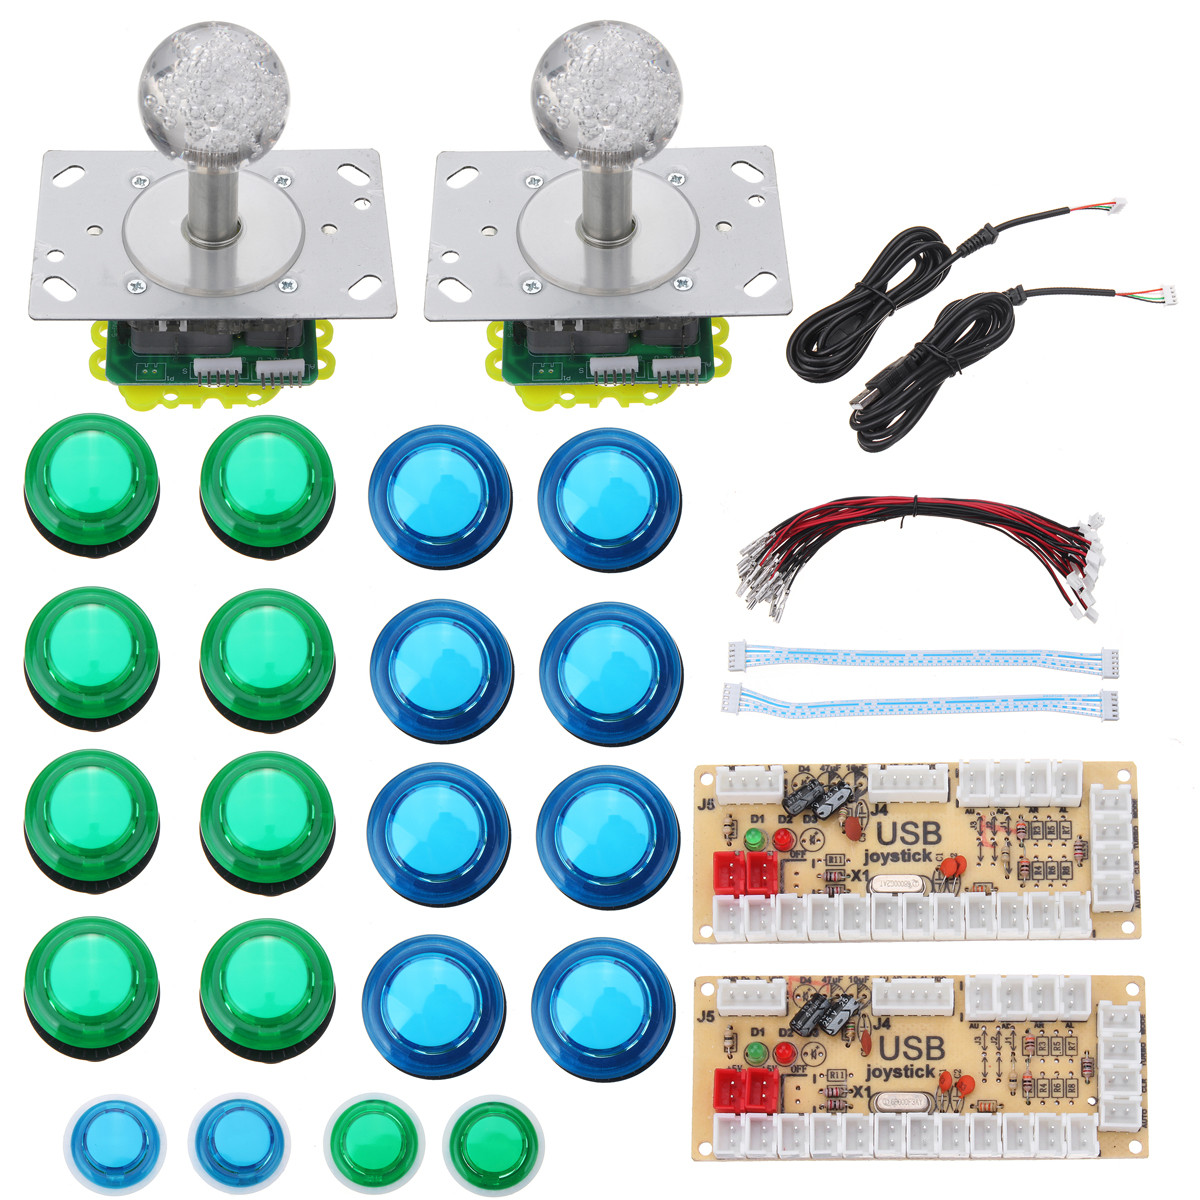 

Colorful LED Джойстик Push Button USB Encoders Аркадный игровой контроллер DIY Набор